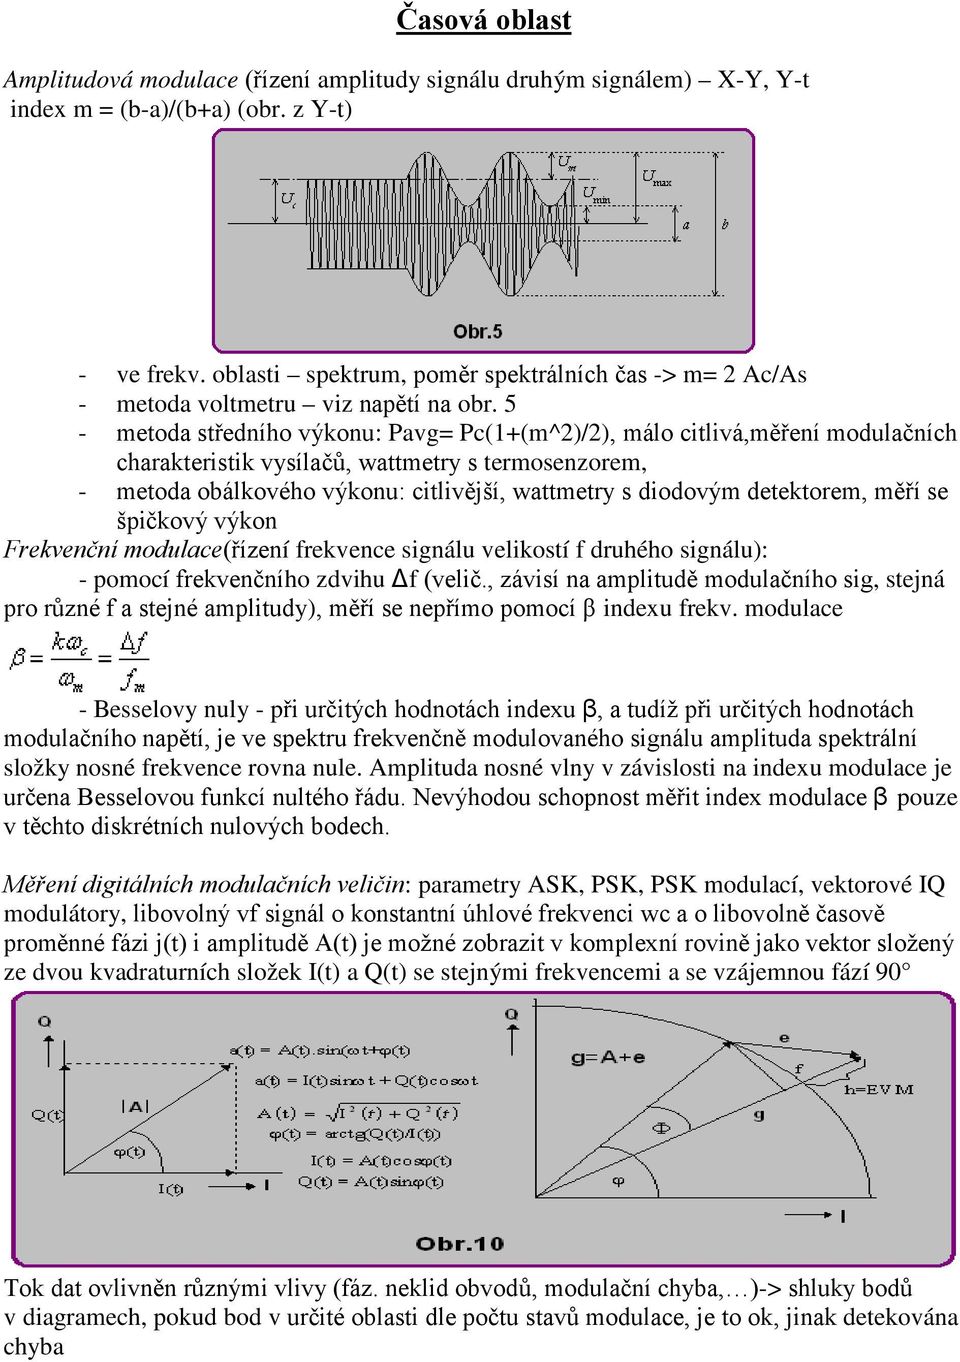 5 - metoda středního výkonu: Pavg= Pc(1+(m^2)/2), málo citlivá,měření modulačních charakteristik vysílačů, wattmetry s termosenzorem, - metoda obálkového výkonu: citlivější, wattmetry s diodovým